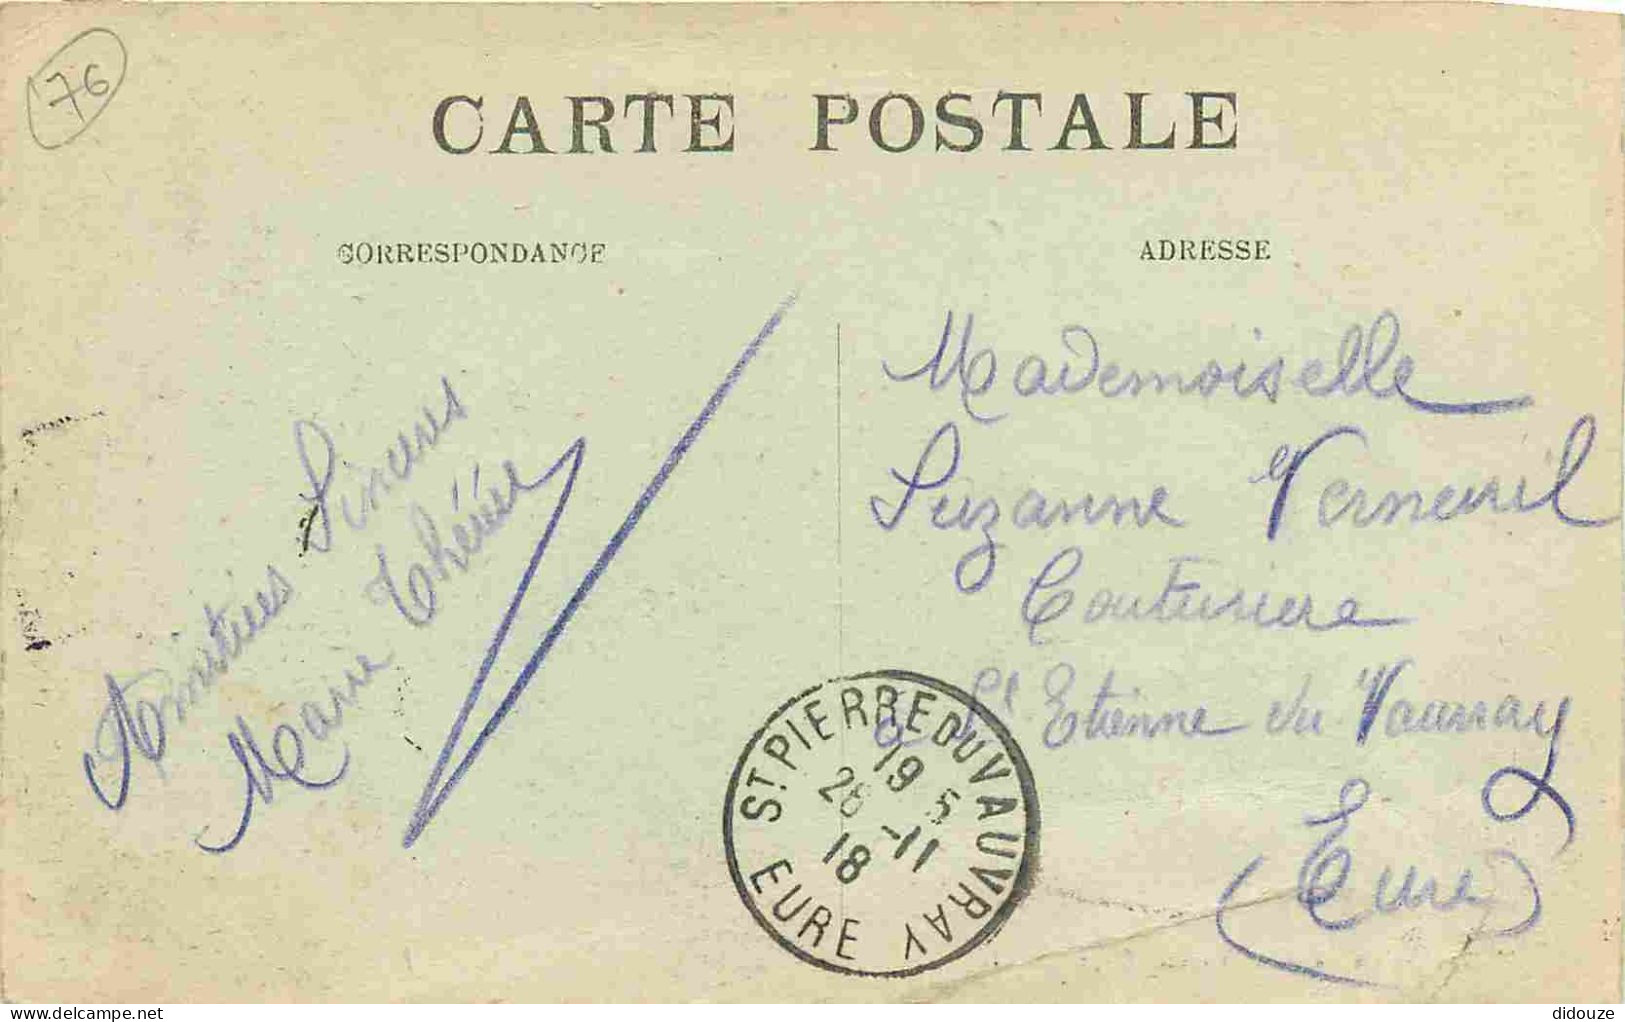 76 - Yvetot - Rue Hedelin - CPA - Oblitération Ronde De 1918 - Voir Scans Recto-Verso - Yvetot